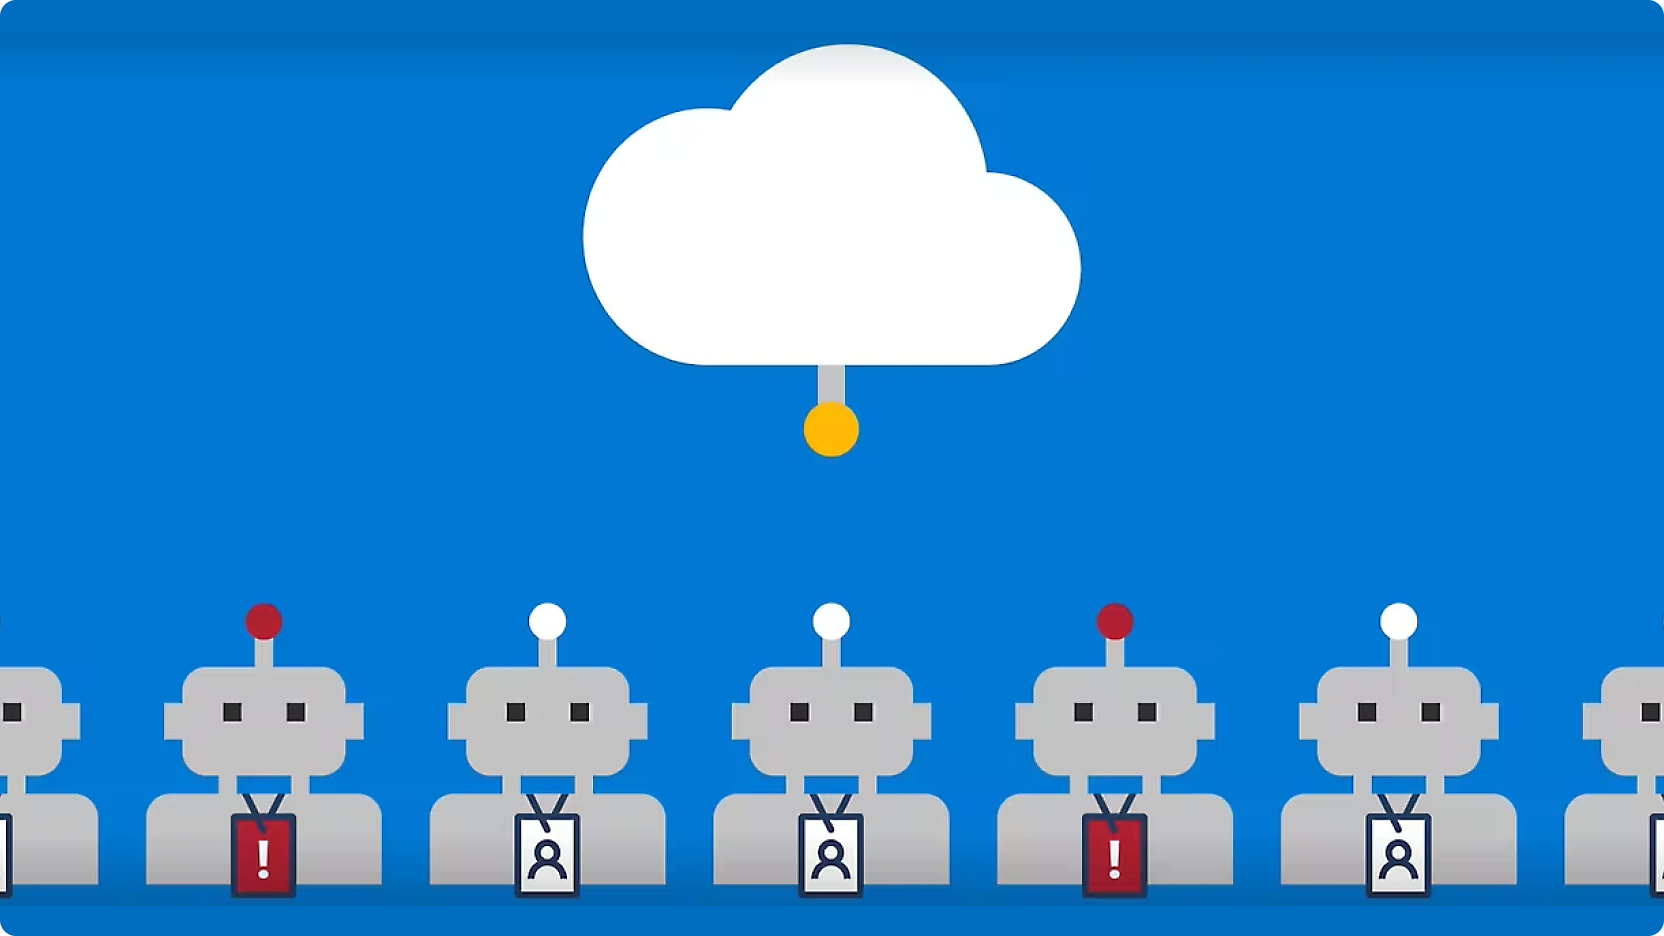 Gráfico que representa filas de robots con botones rojos en la cabeza, conectados por líneas a una nube central